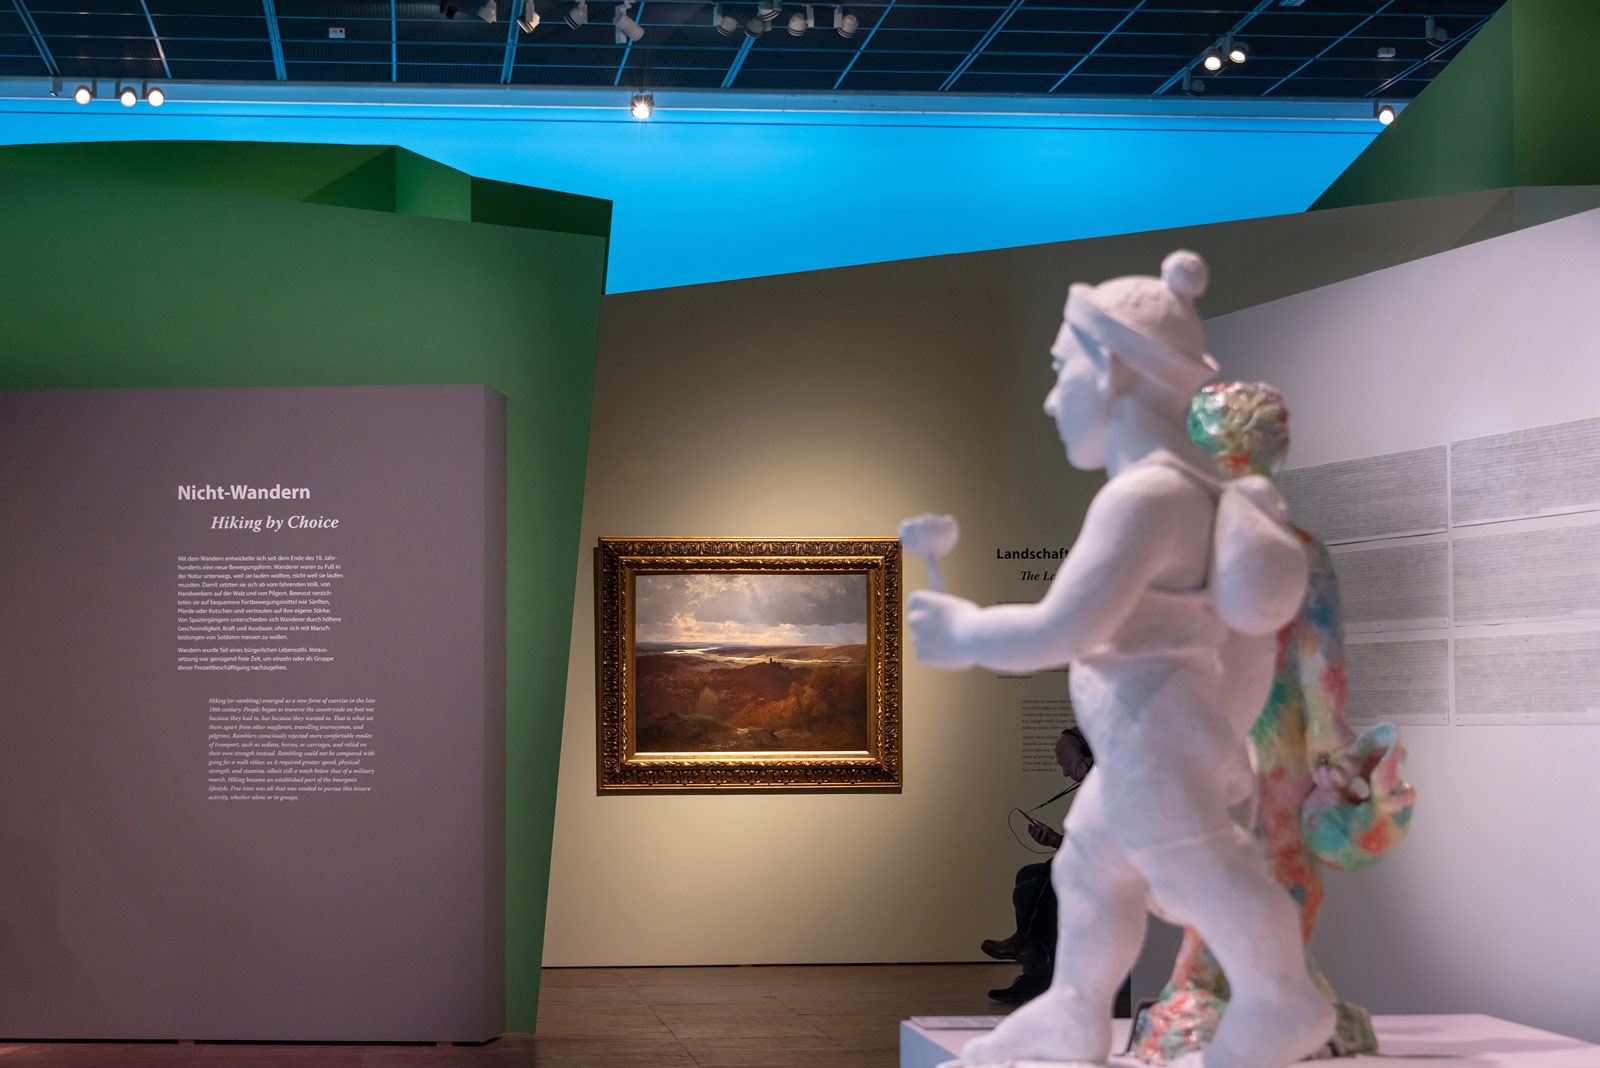 Das Referenzbild für Ausstellungsgestaltung aus der Sonderausstellung Wanderland zeigt eine für die Szenografie typische Rauminszenierung